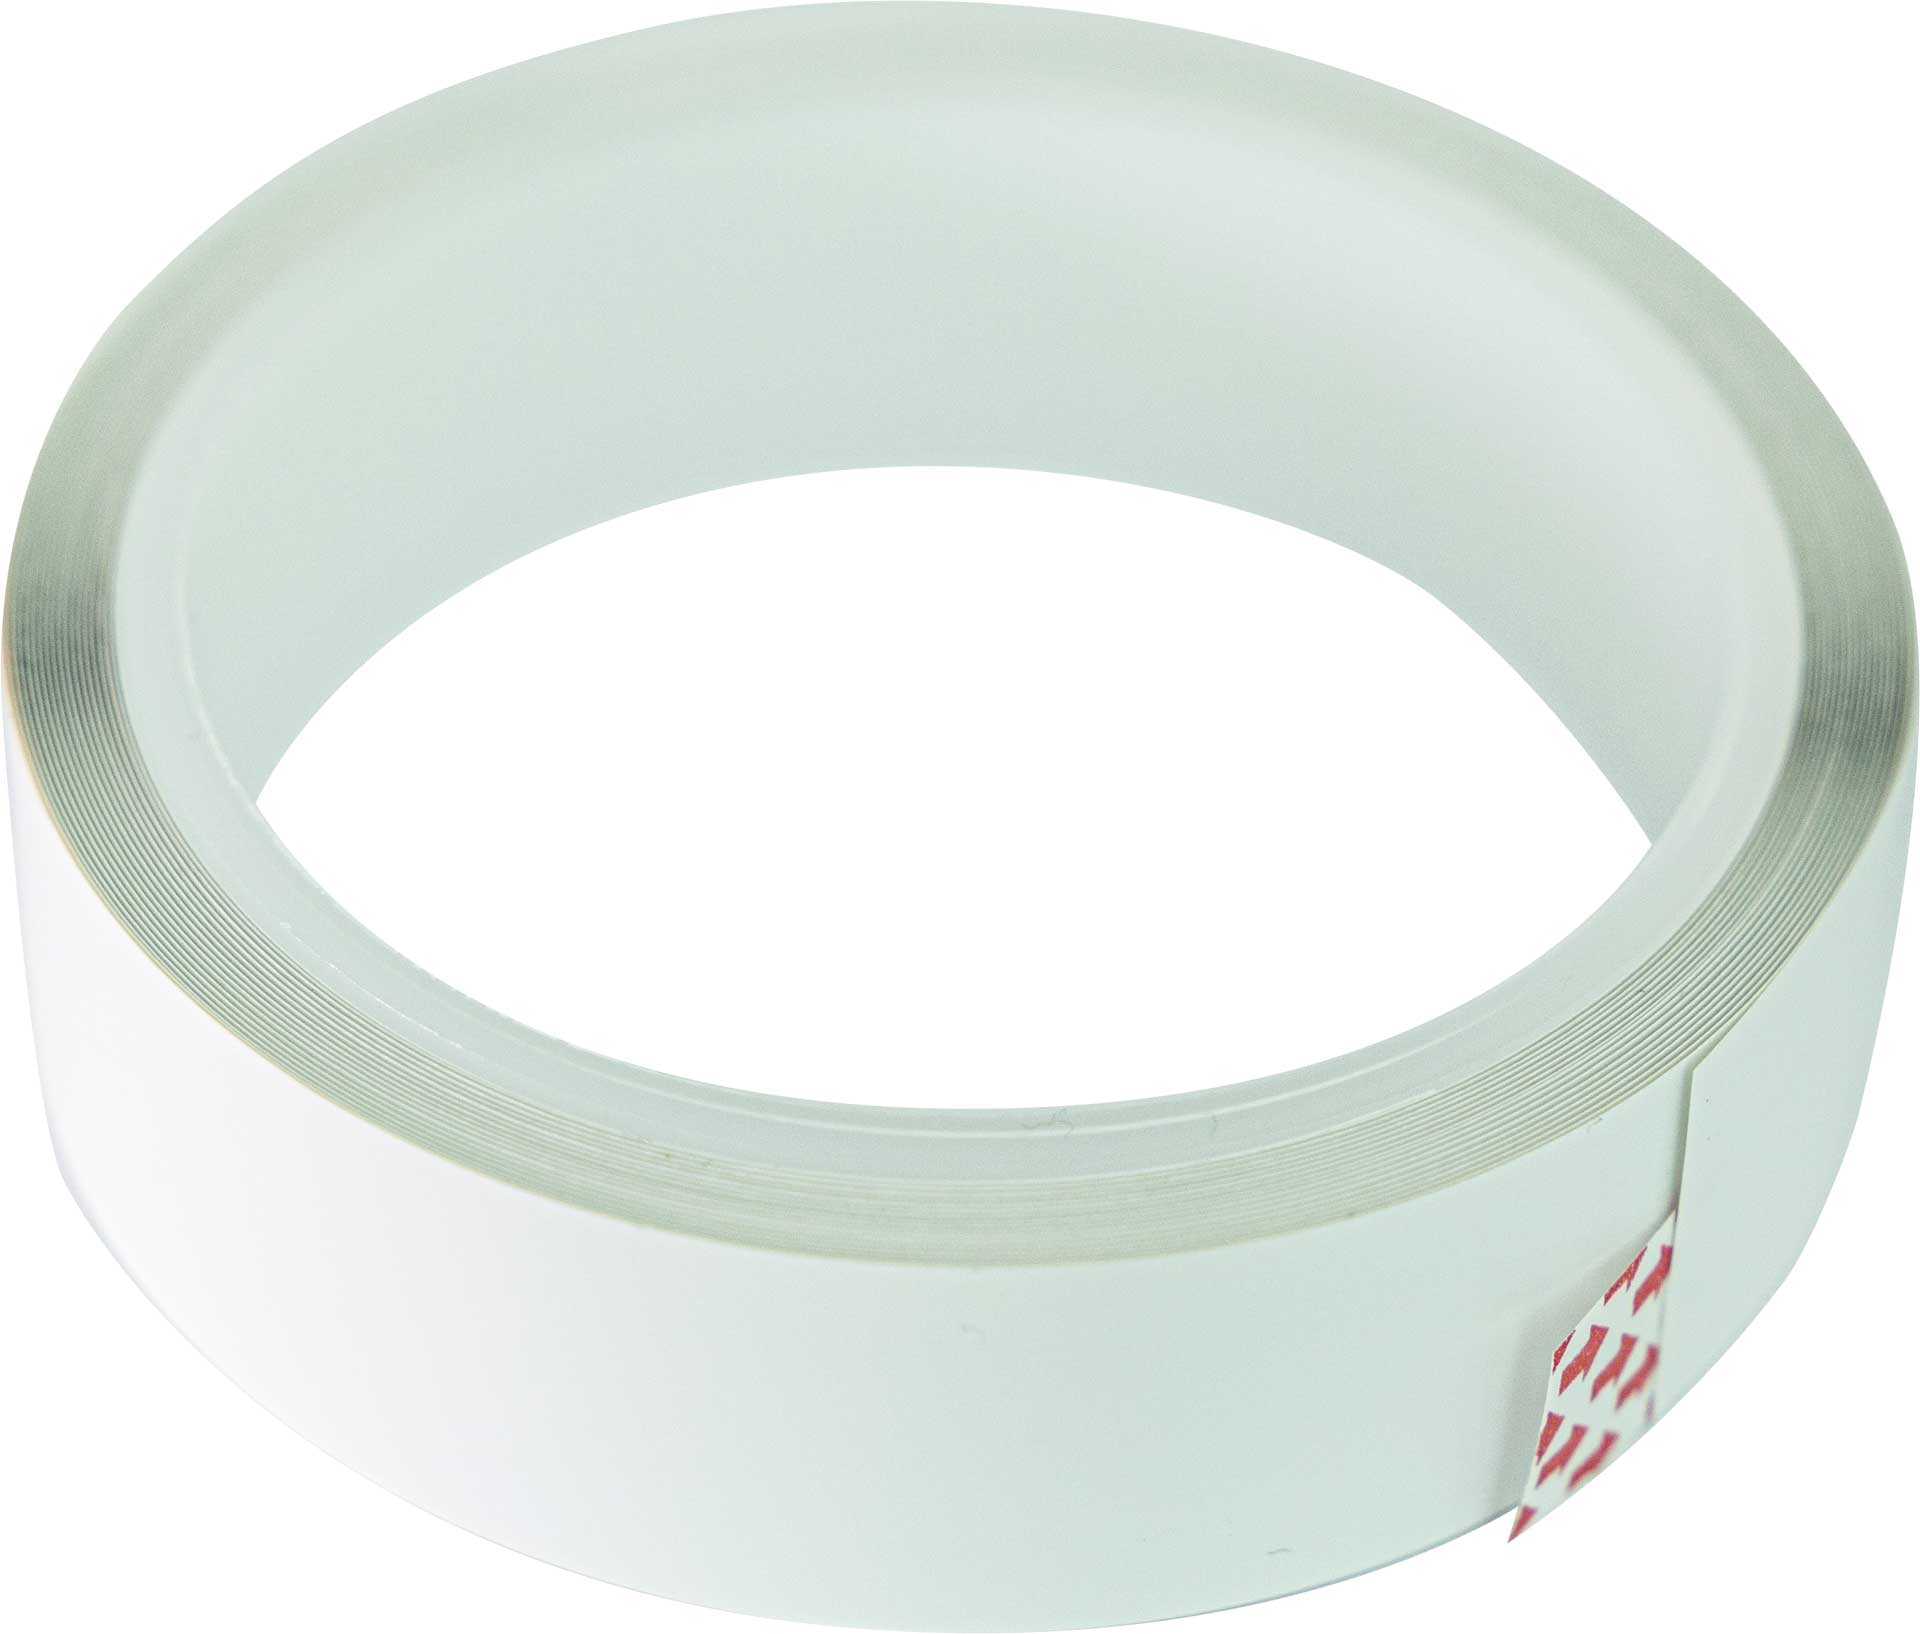 Robbe Modellsport Rudder gap cover tape 25mm white (100µm) 5 meter, gap masking tape